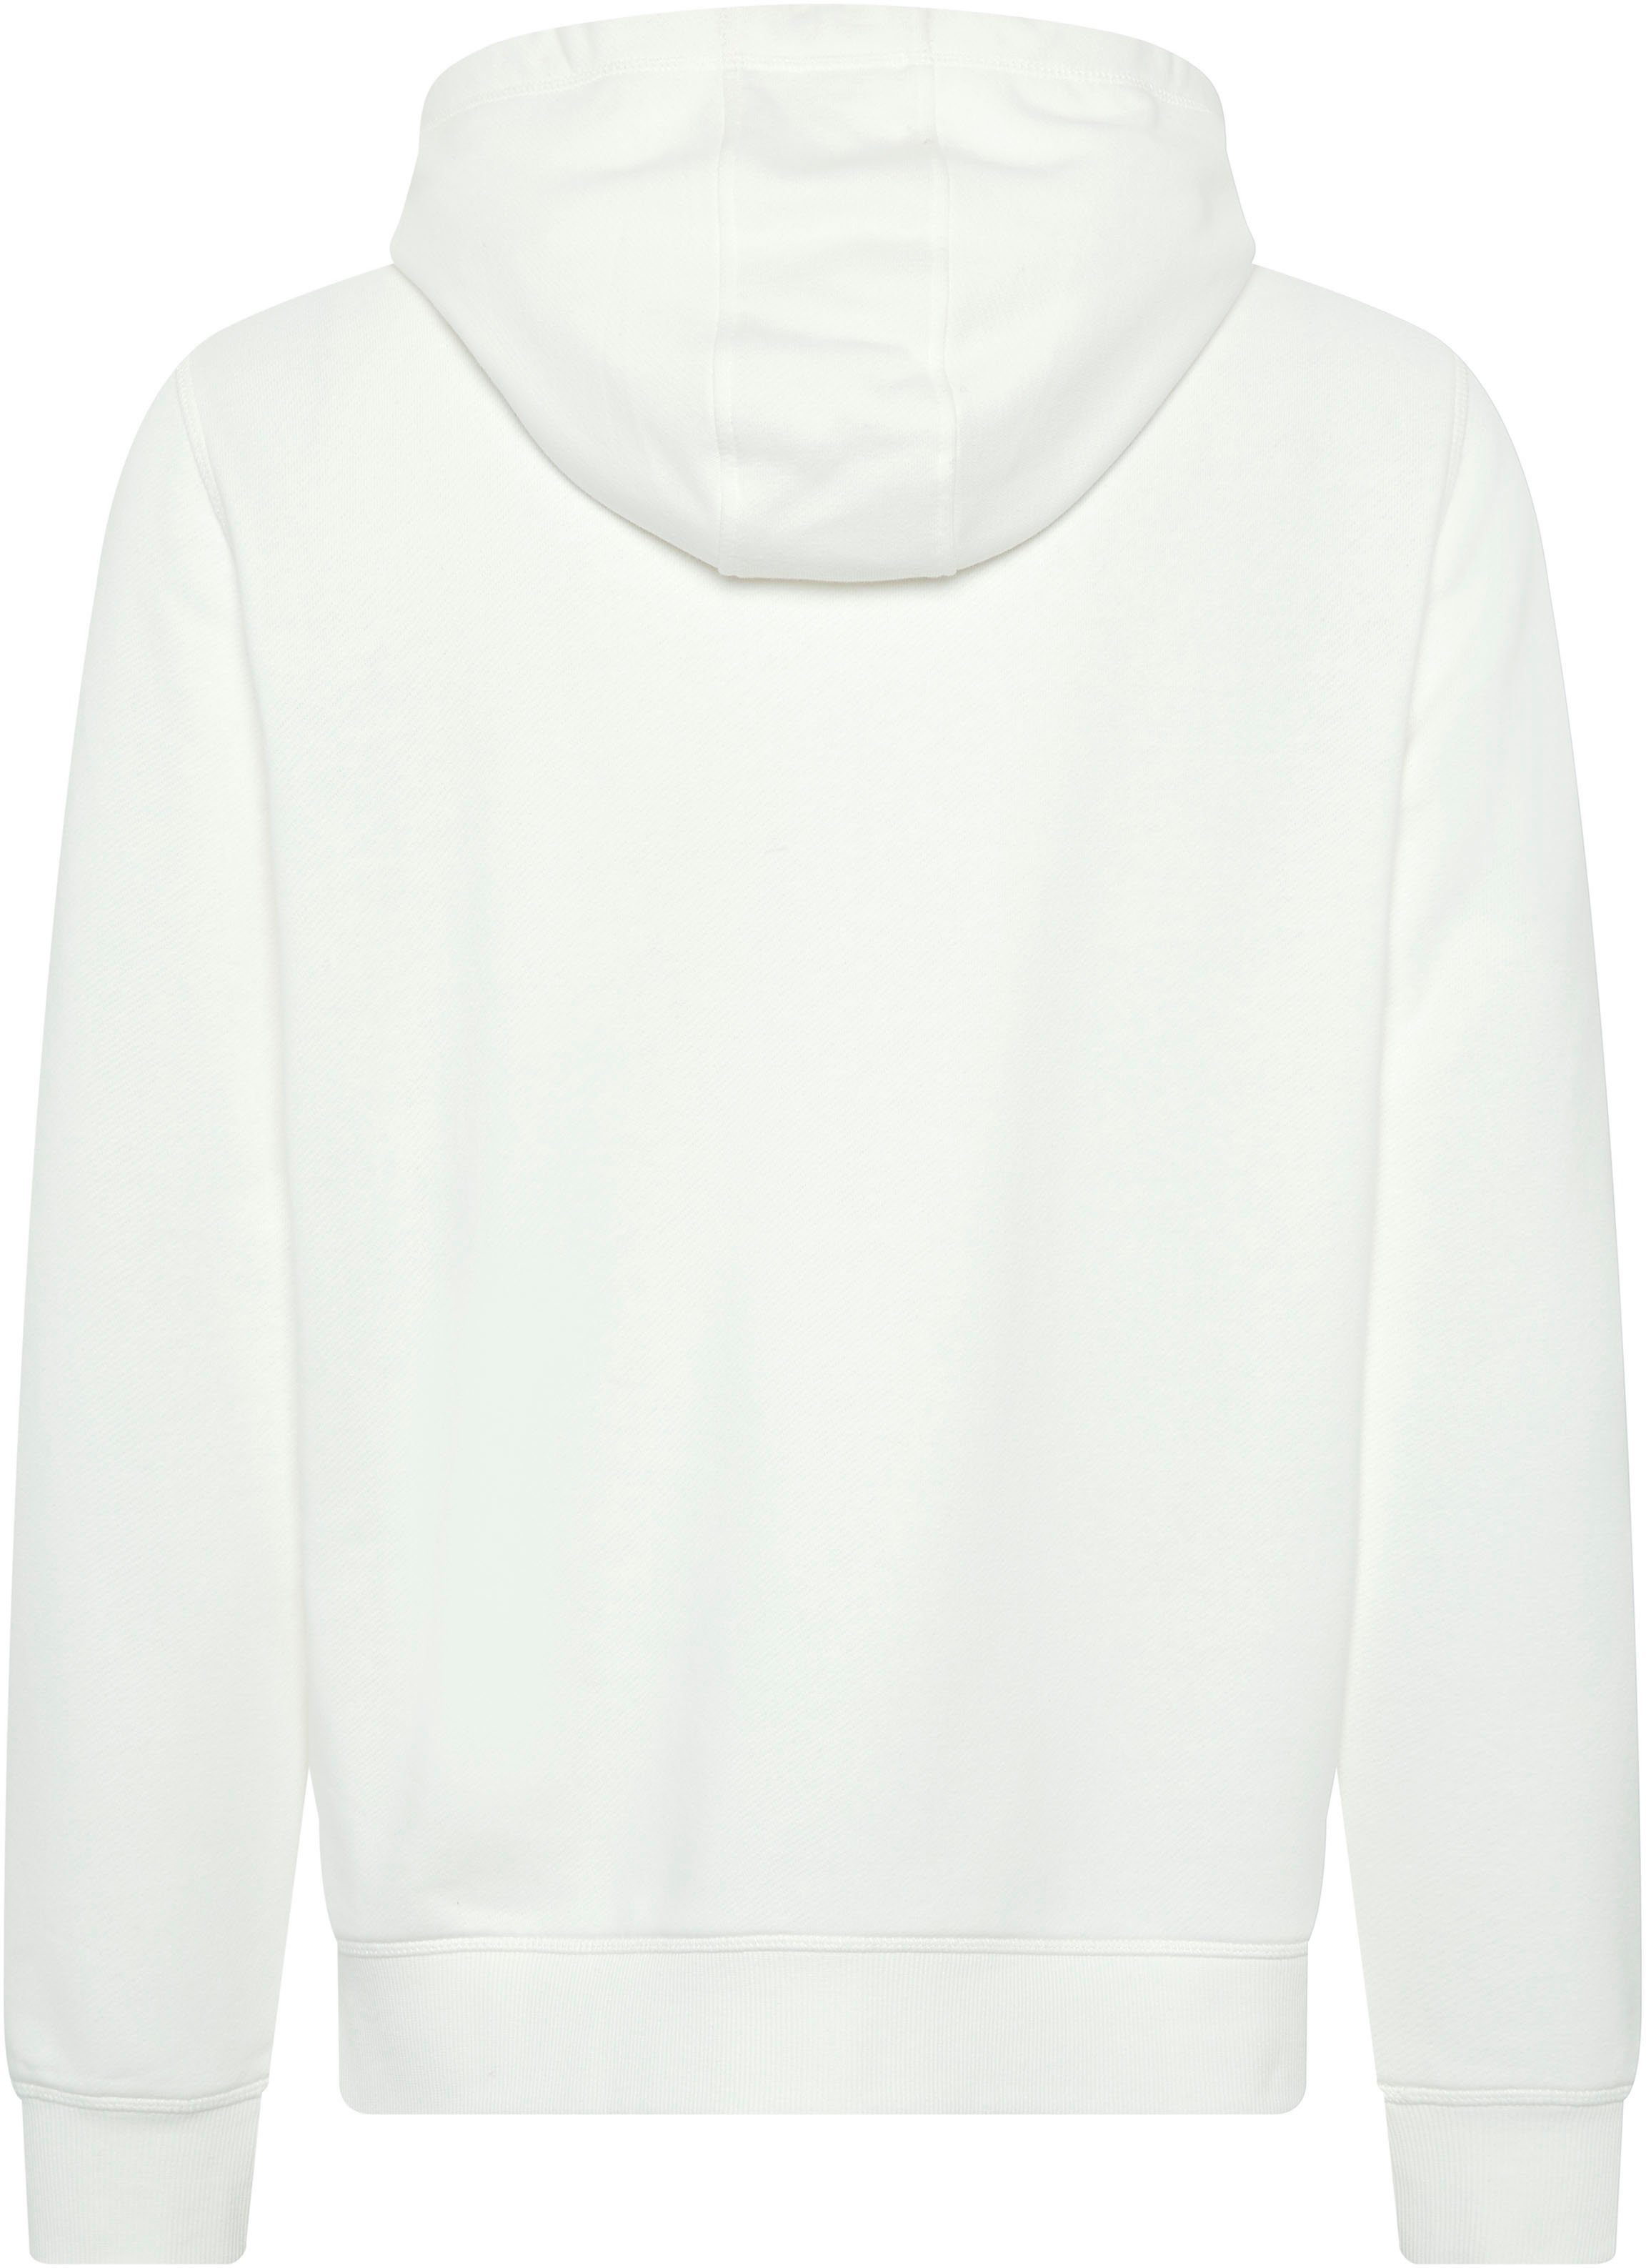 Sweatshirt Chiemsee Star White